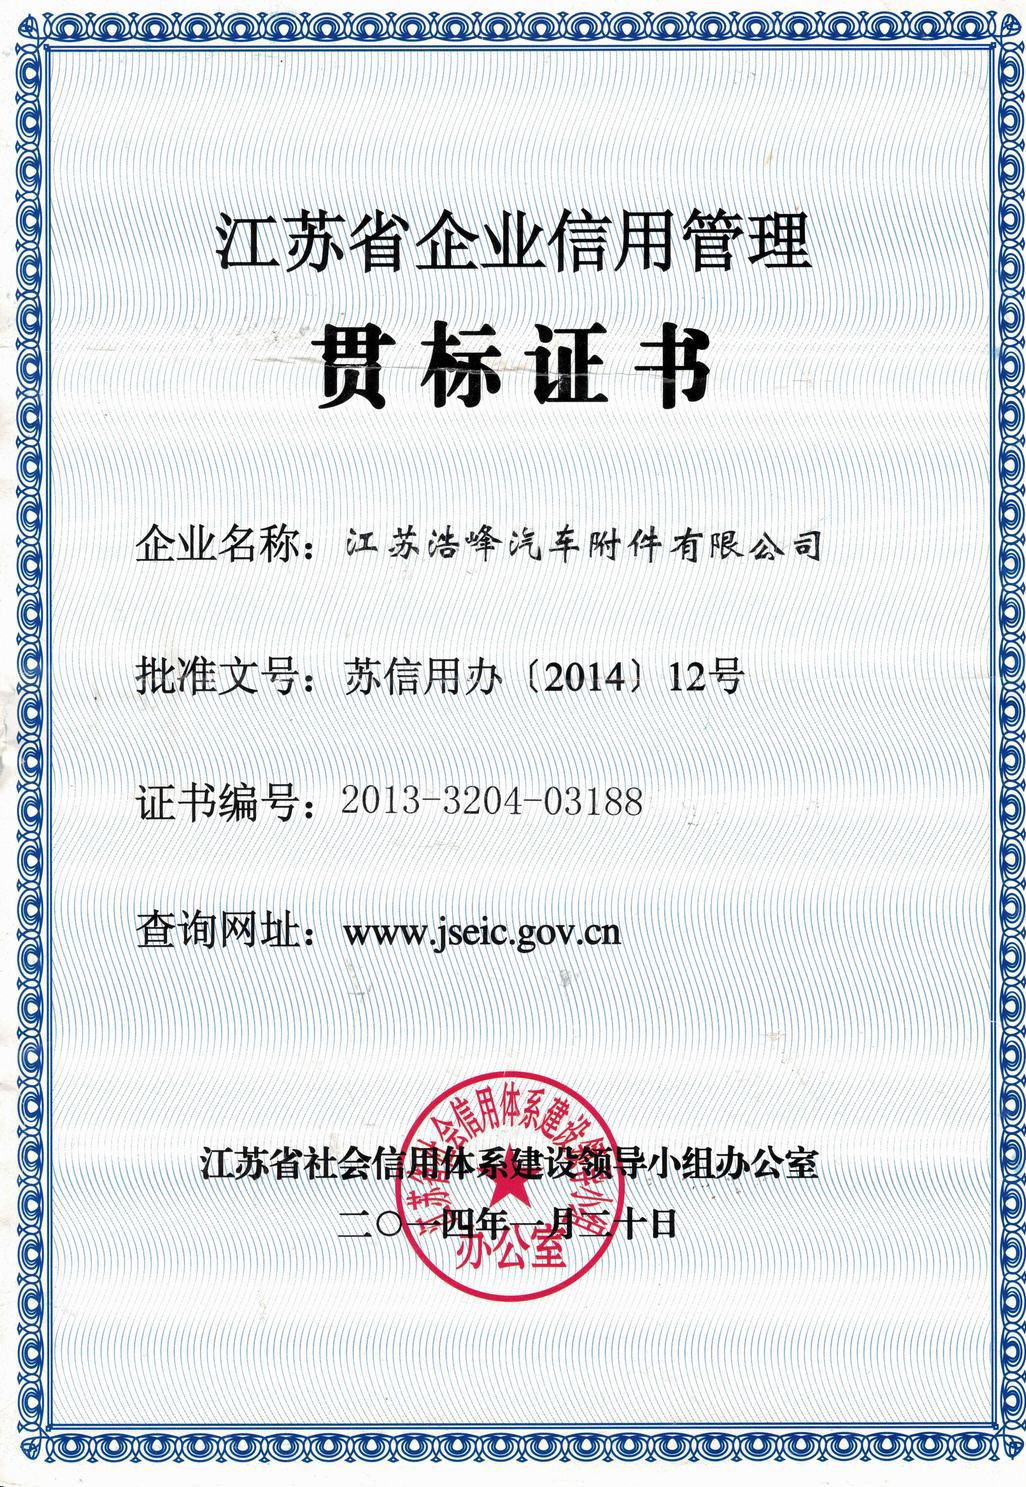 江苏省企业信用管理 贯标证书